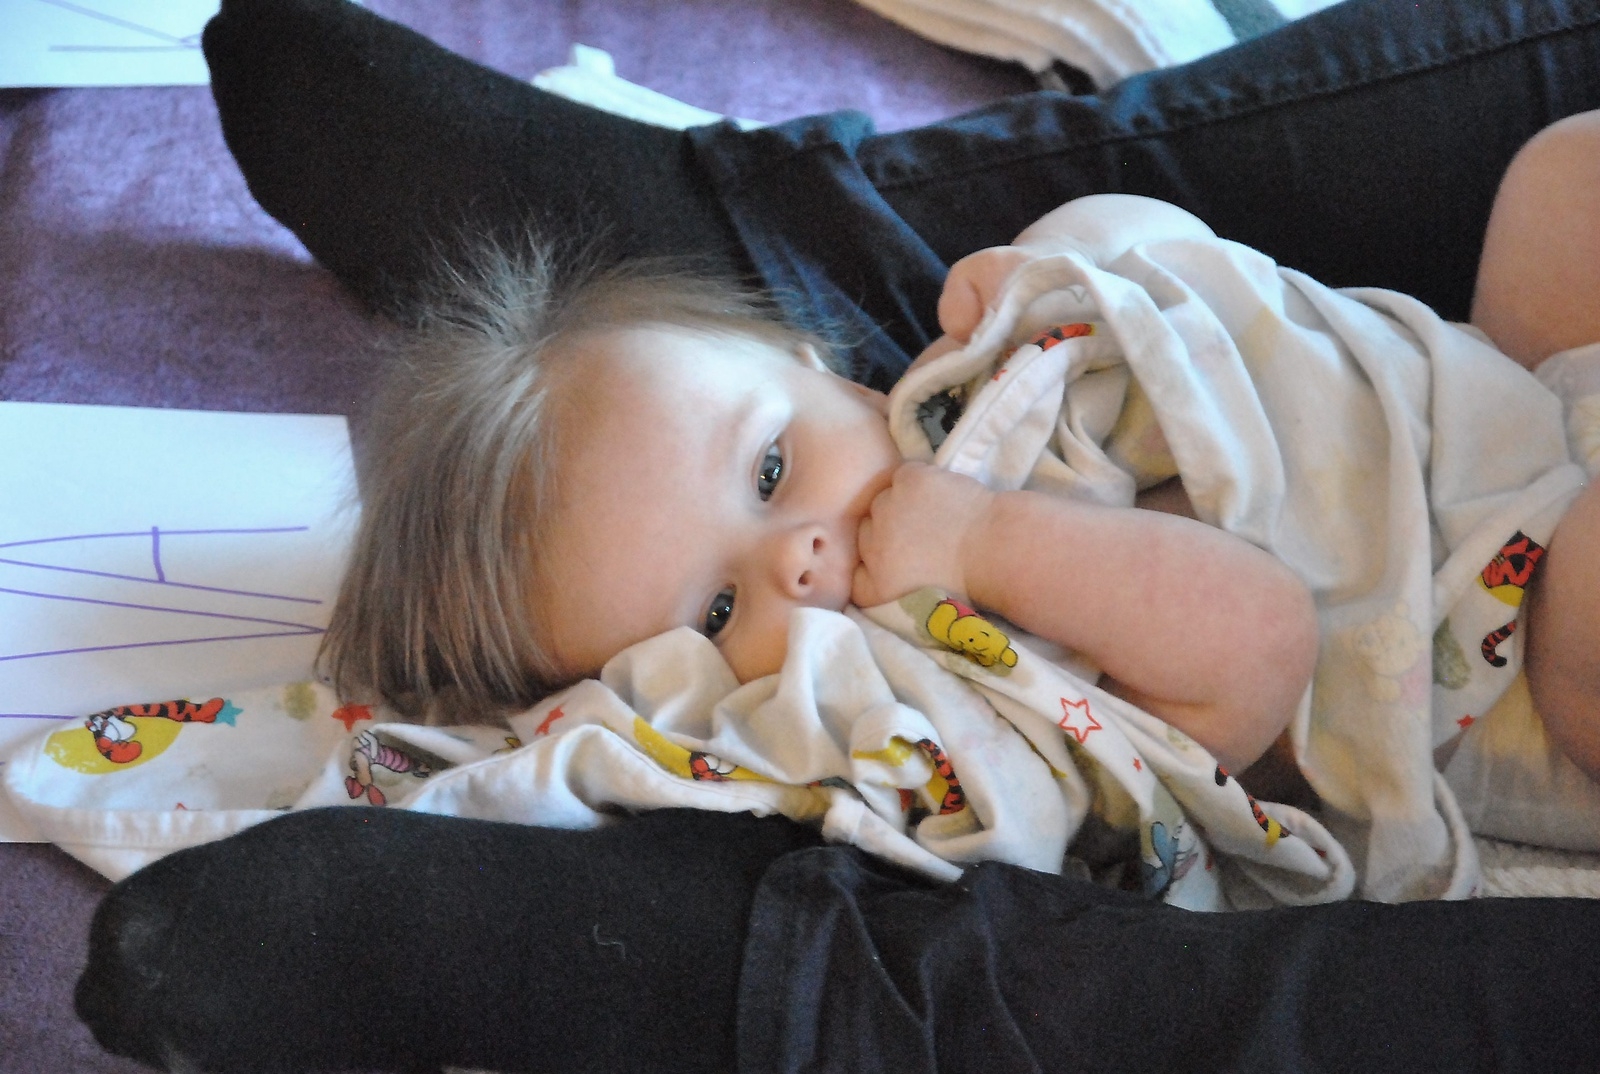 Häftigaste frillan har Alva Rosander, som strax innan massagen varit på babysim. Inte konstigt hon blev hungrig!
Foto: Marie Strömberg Andersson